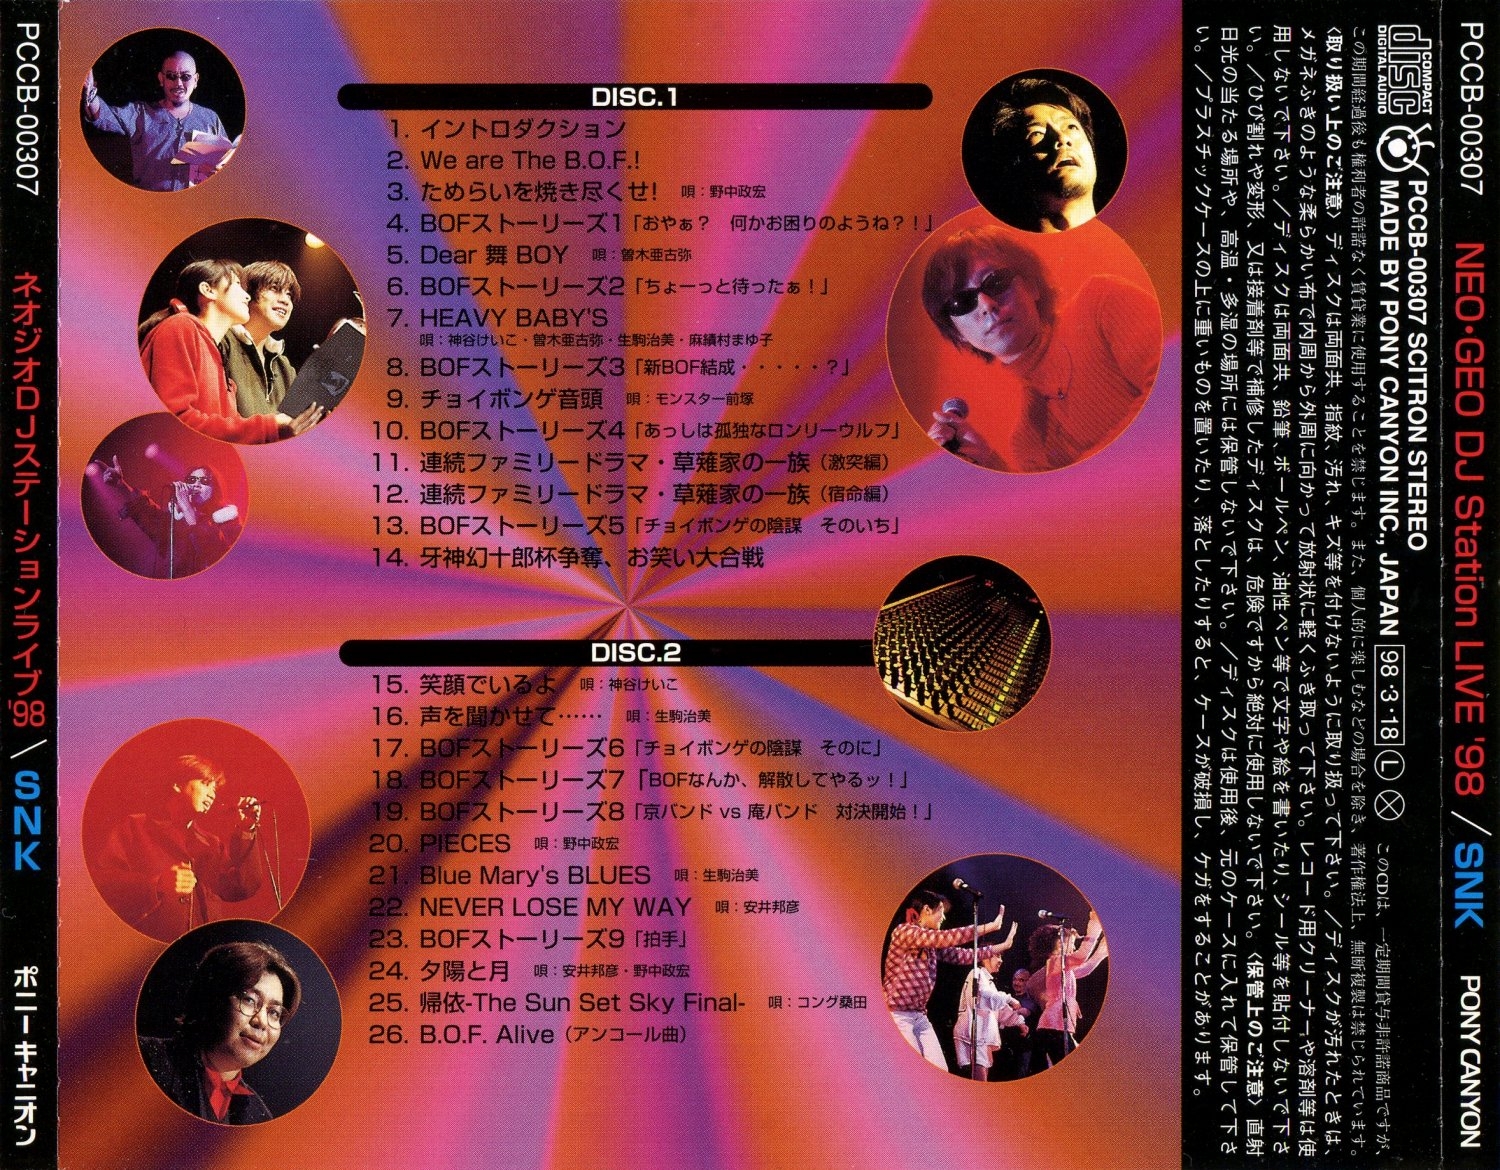 NEO-GEO DJ Station Live '98 (1998) MP3 - Download NEO-GEO DJ Station Live ' 98 (1998) Soundtracks for FREE!